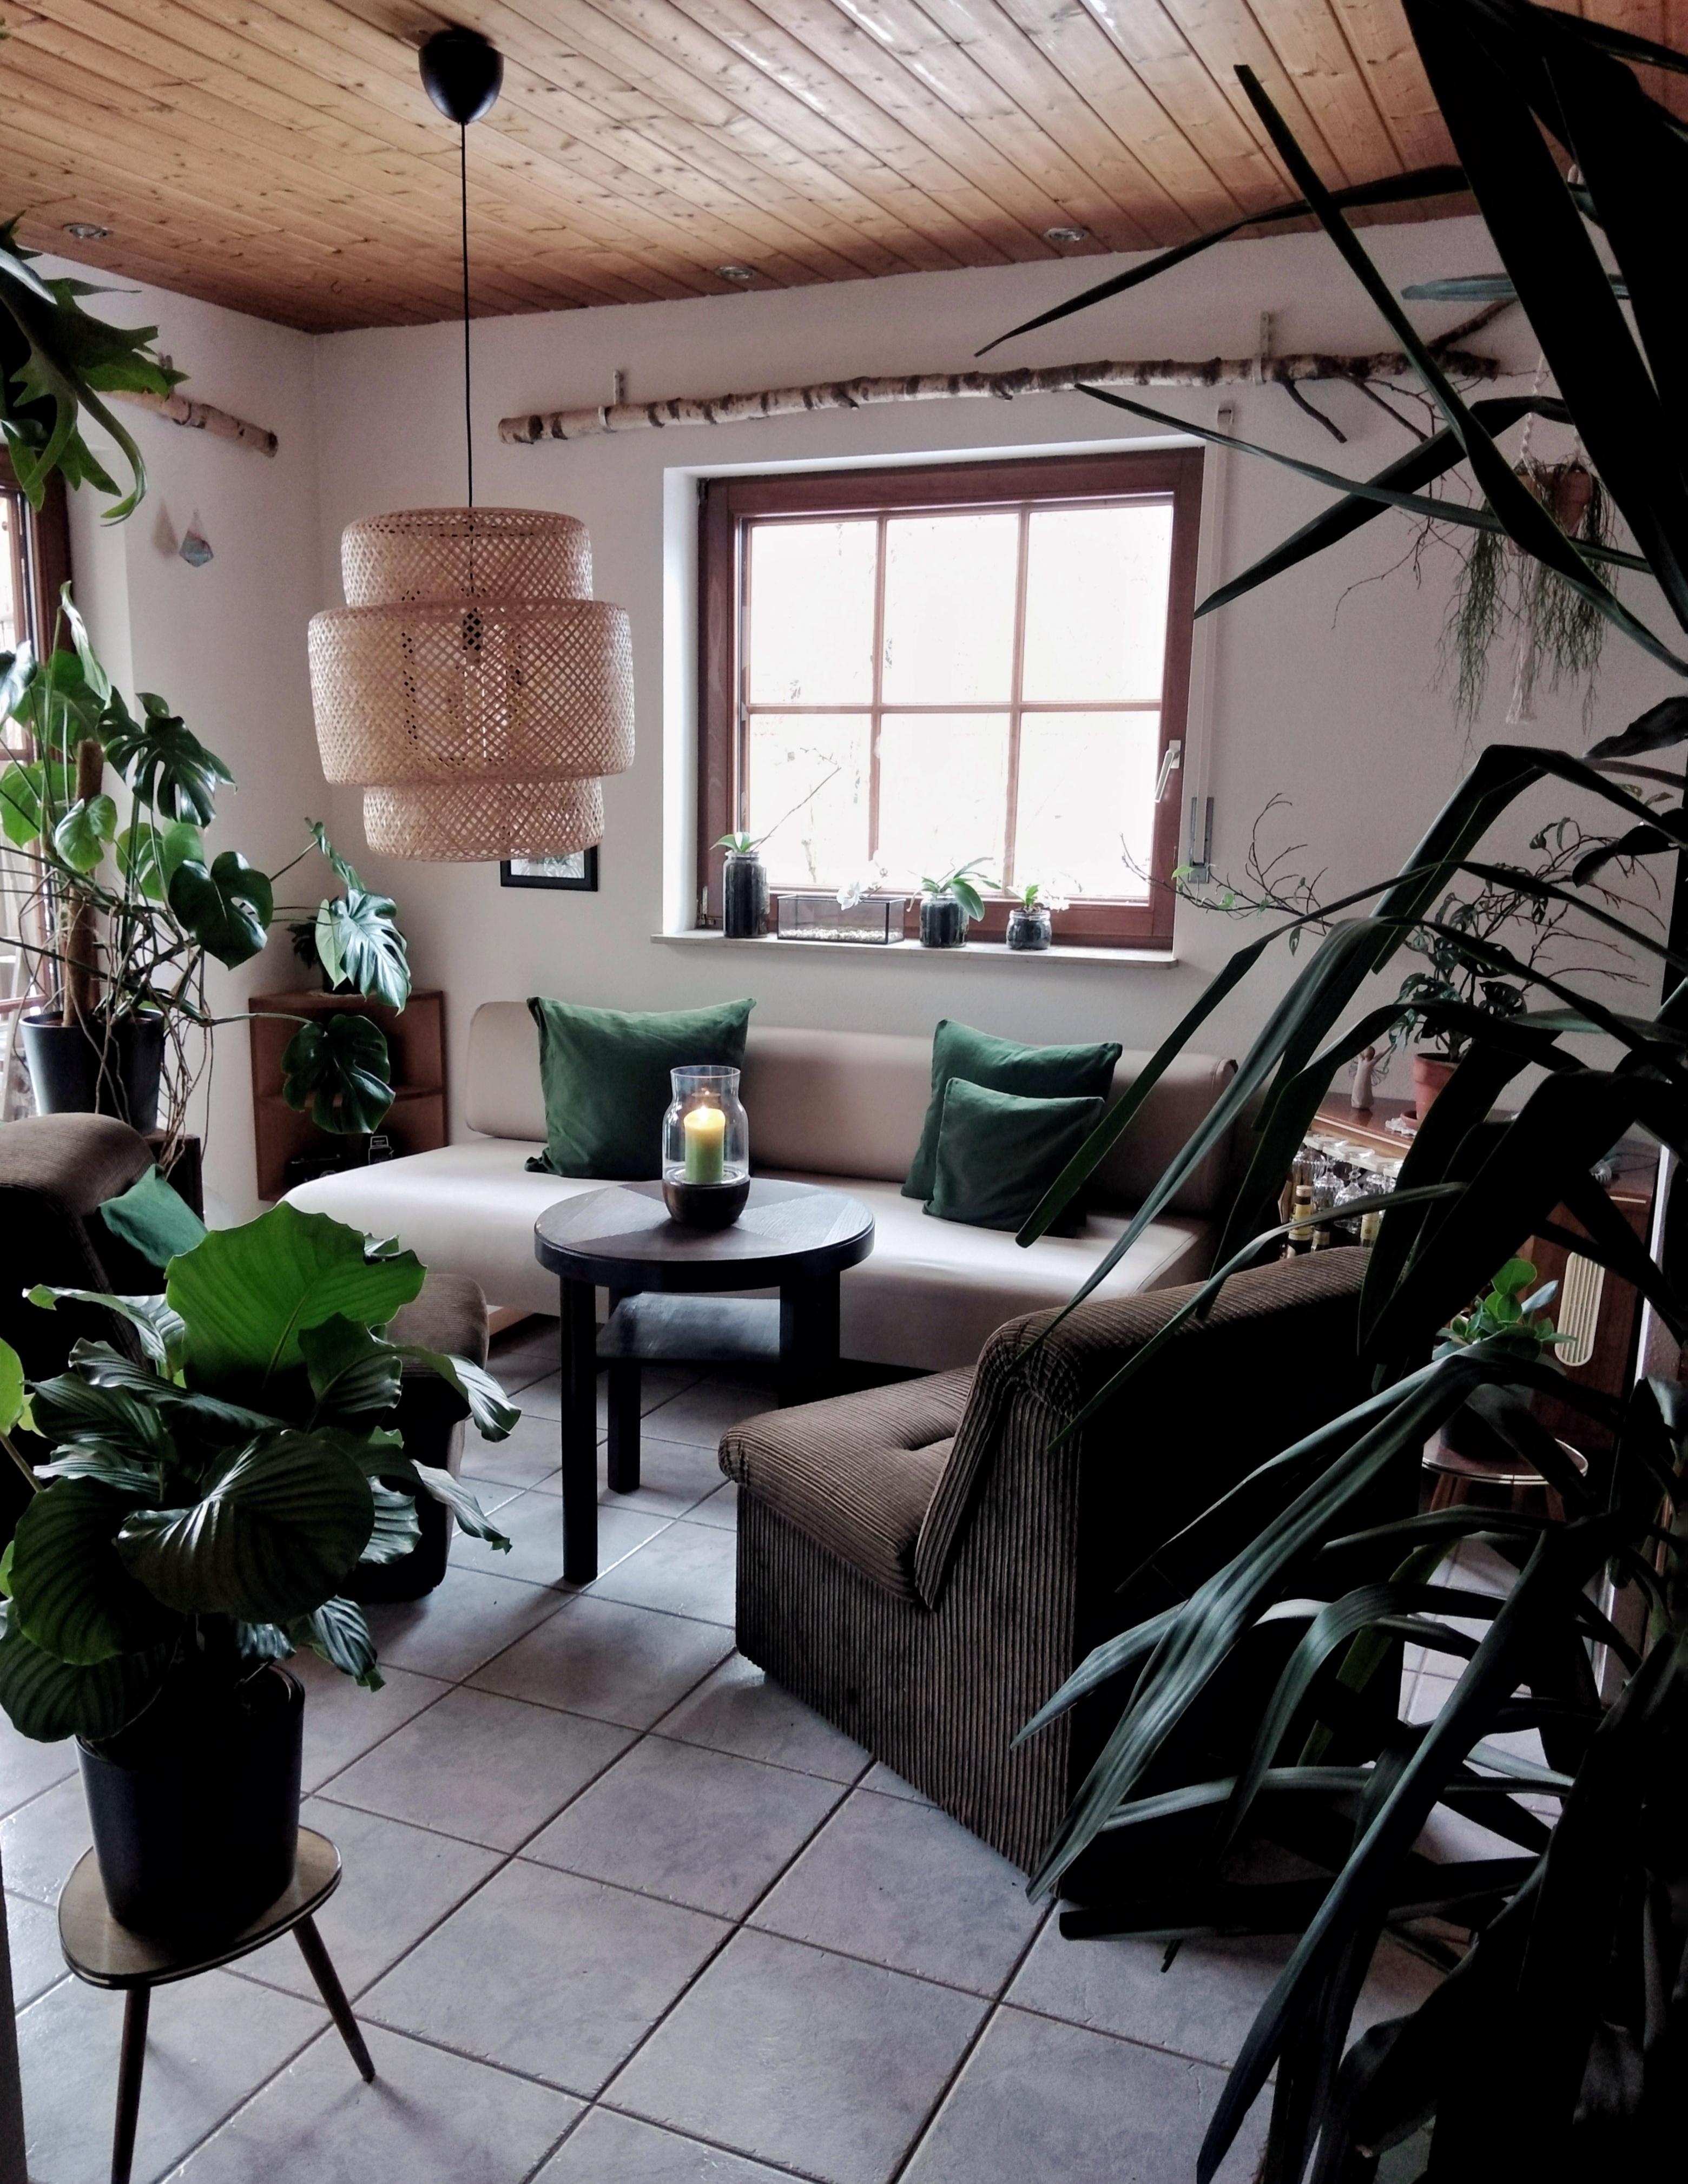 Der Dschungel wächst... 🌿#zimmerpflanzen #wohnzimmer #couch #sinnerlig #pflanzenliebe 